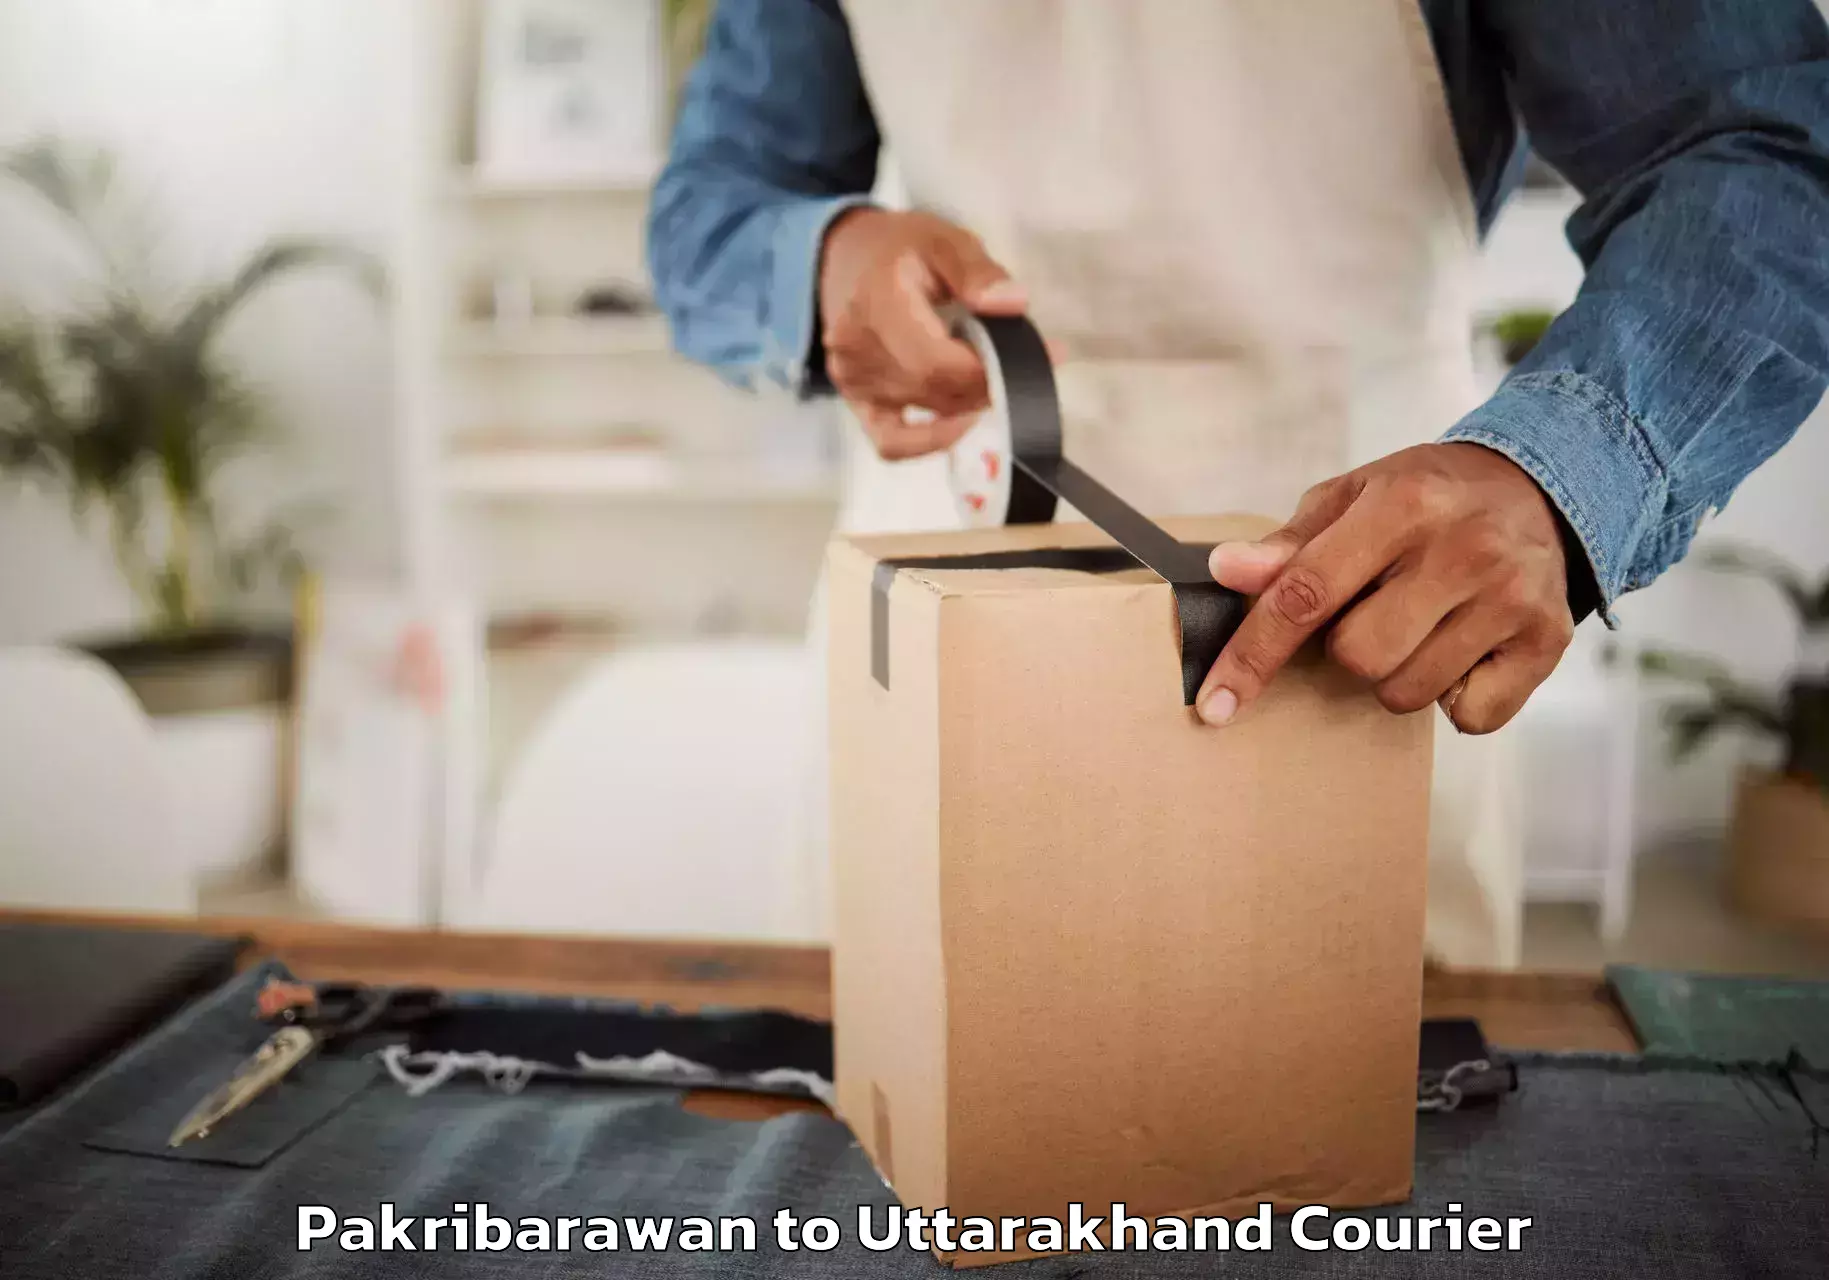 Efficient furniture movers Pakribarawan to Kashipur